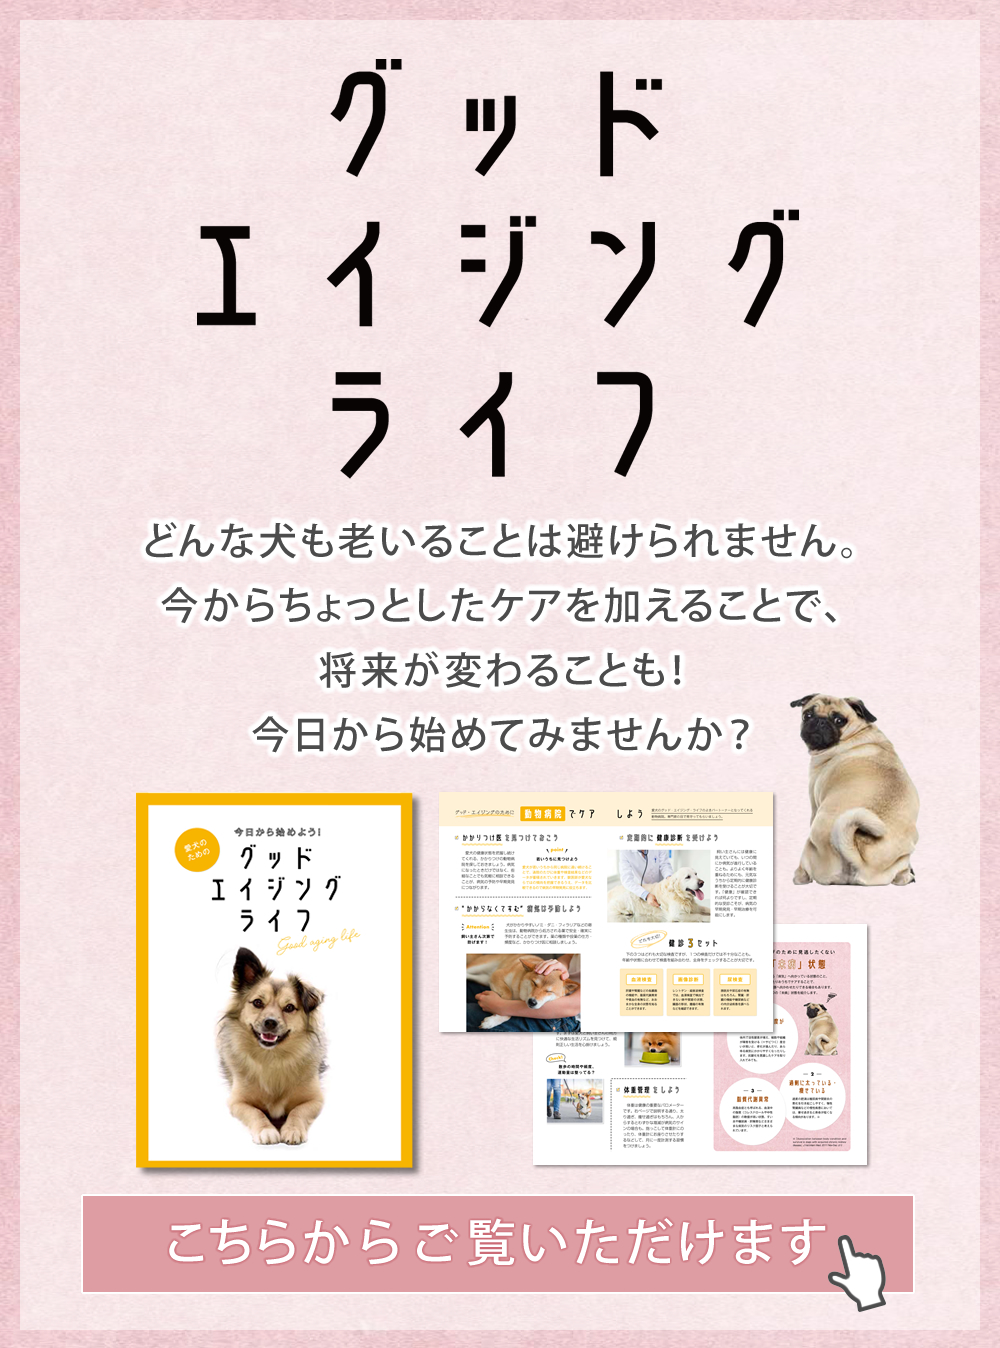 激安超安値 イスクラ犬猫用サプリメント 西伯利亜 ienomat.com.br